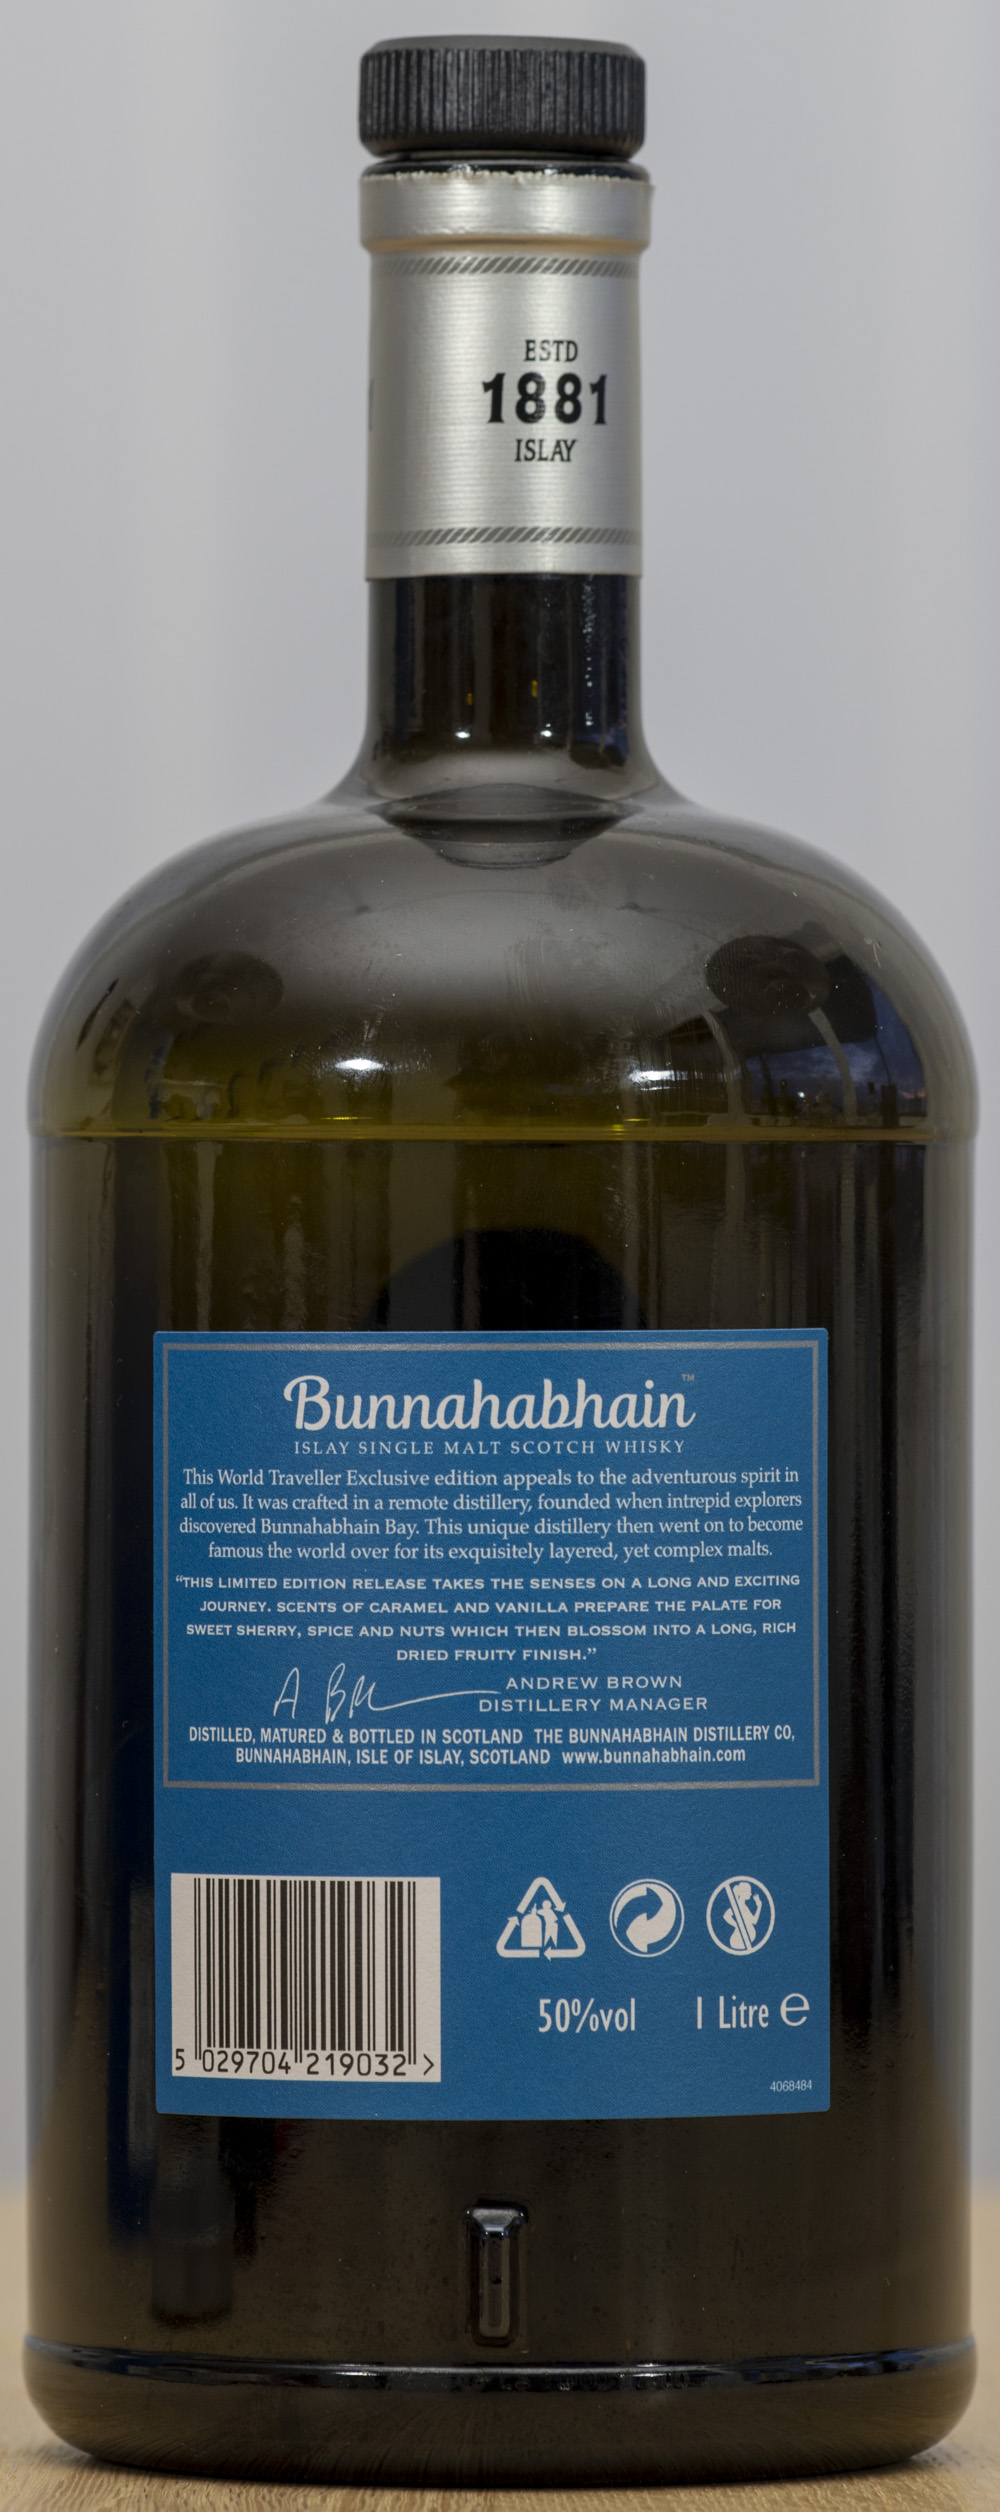 Billede: PHC_1539 - Bunnahabhain An Cladach - bottle back.jpg